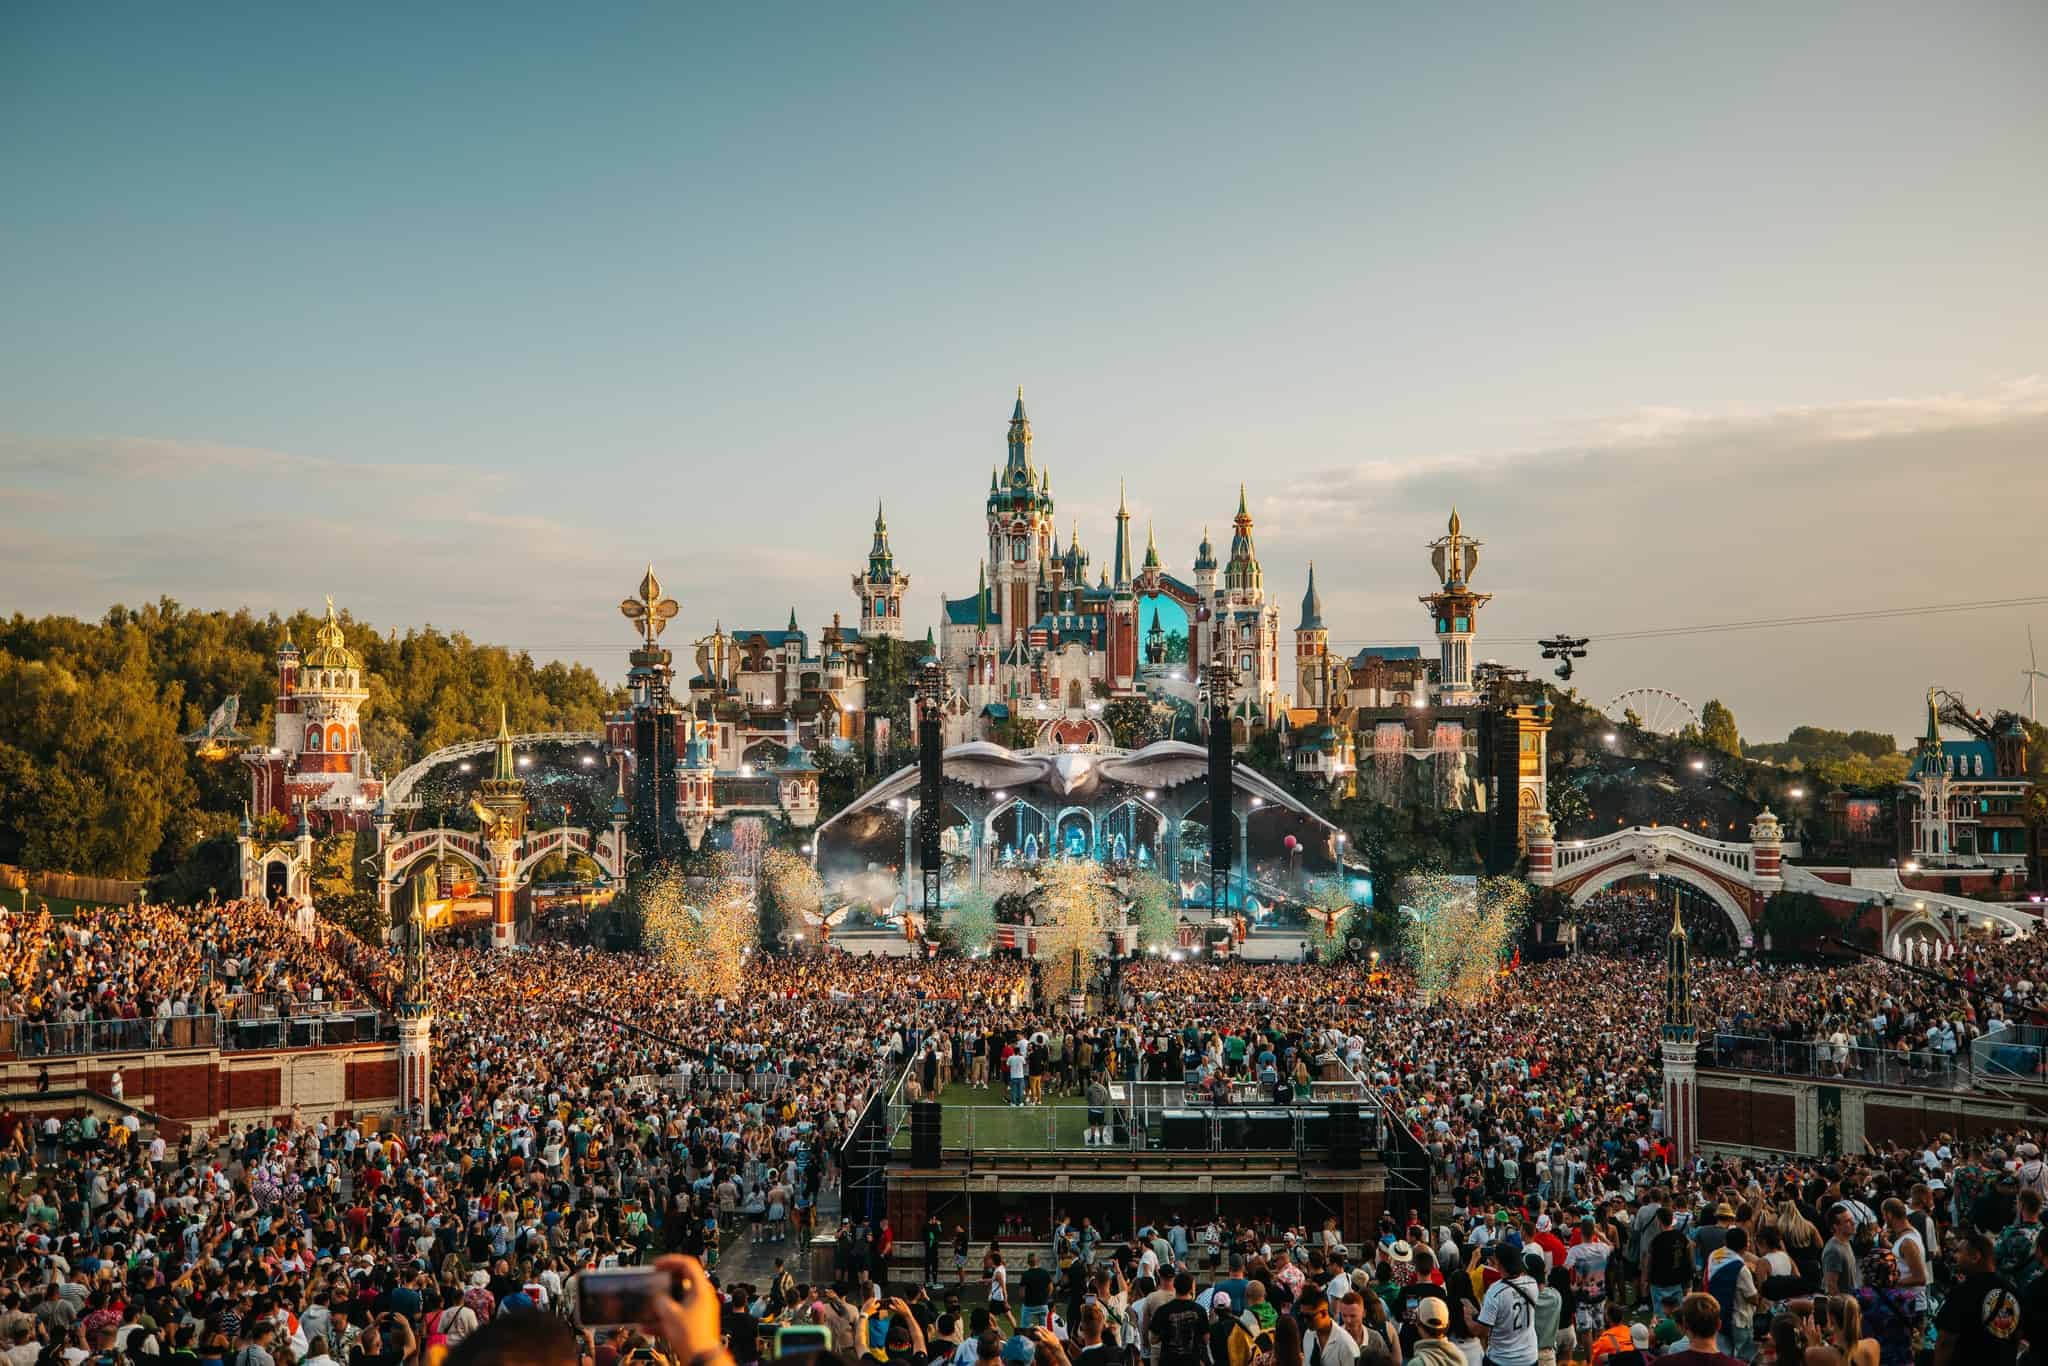 Tomorrowland speaks on reducing carbon footprint